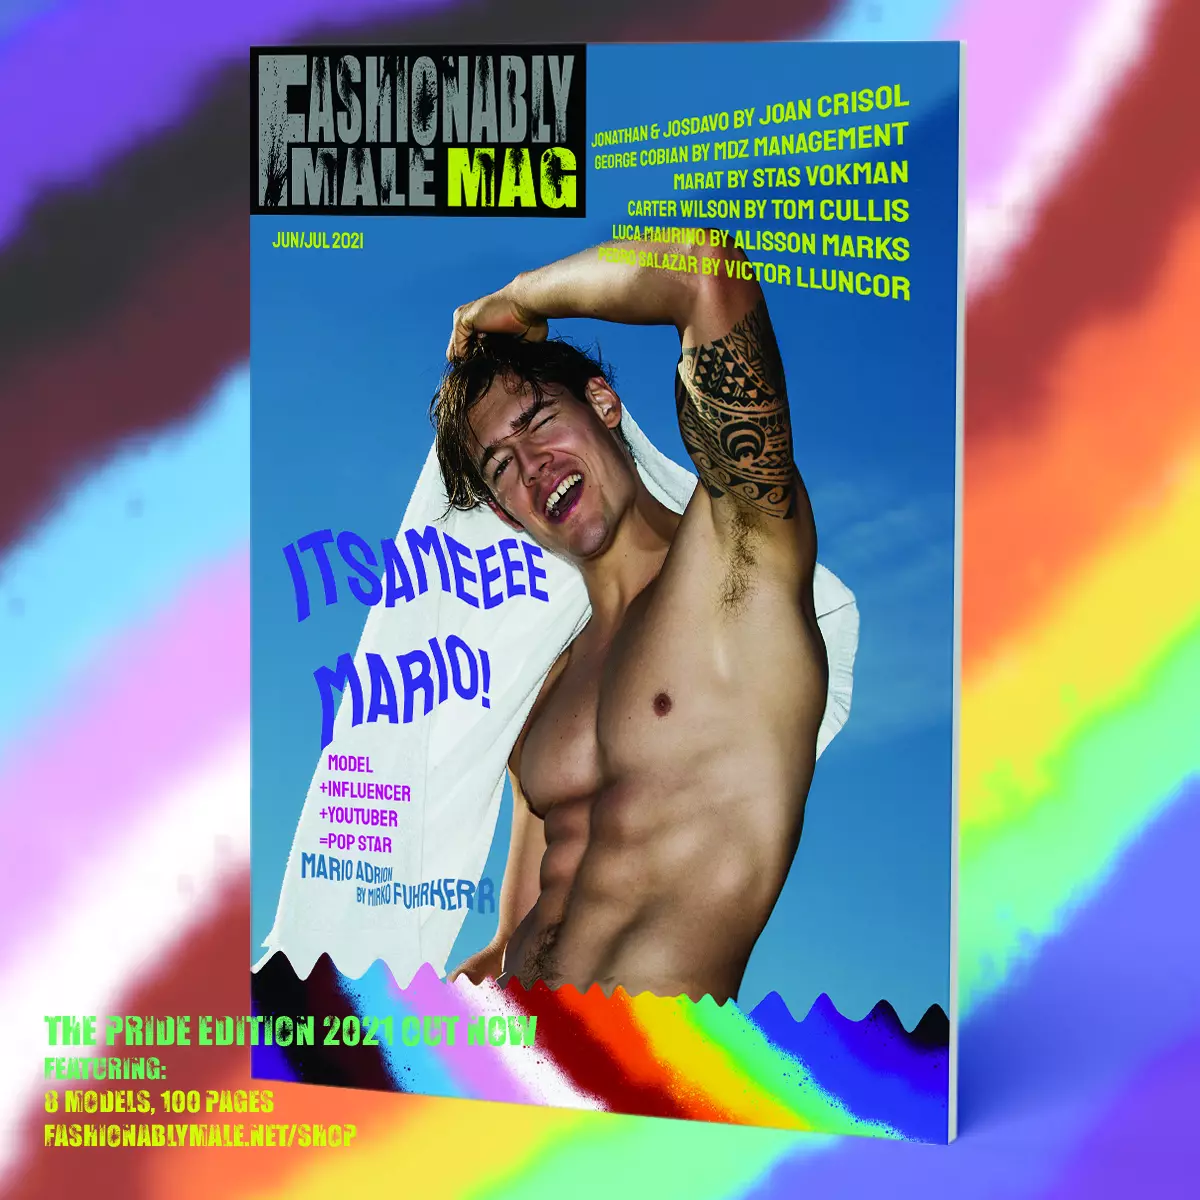 Марио Адрион загварлаг Male Mag Pride Edition 2021 ковер бүтээгдэхүүнд зориулагдсан